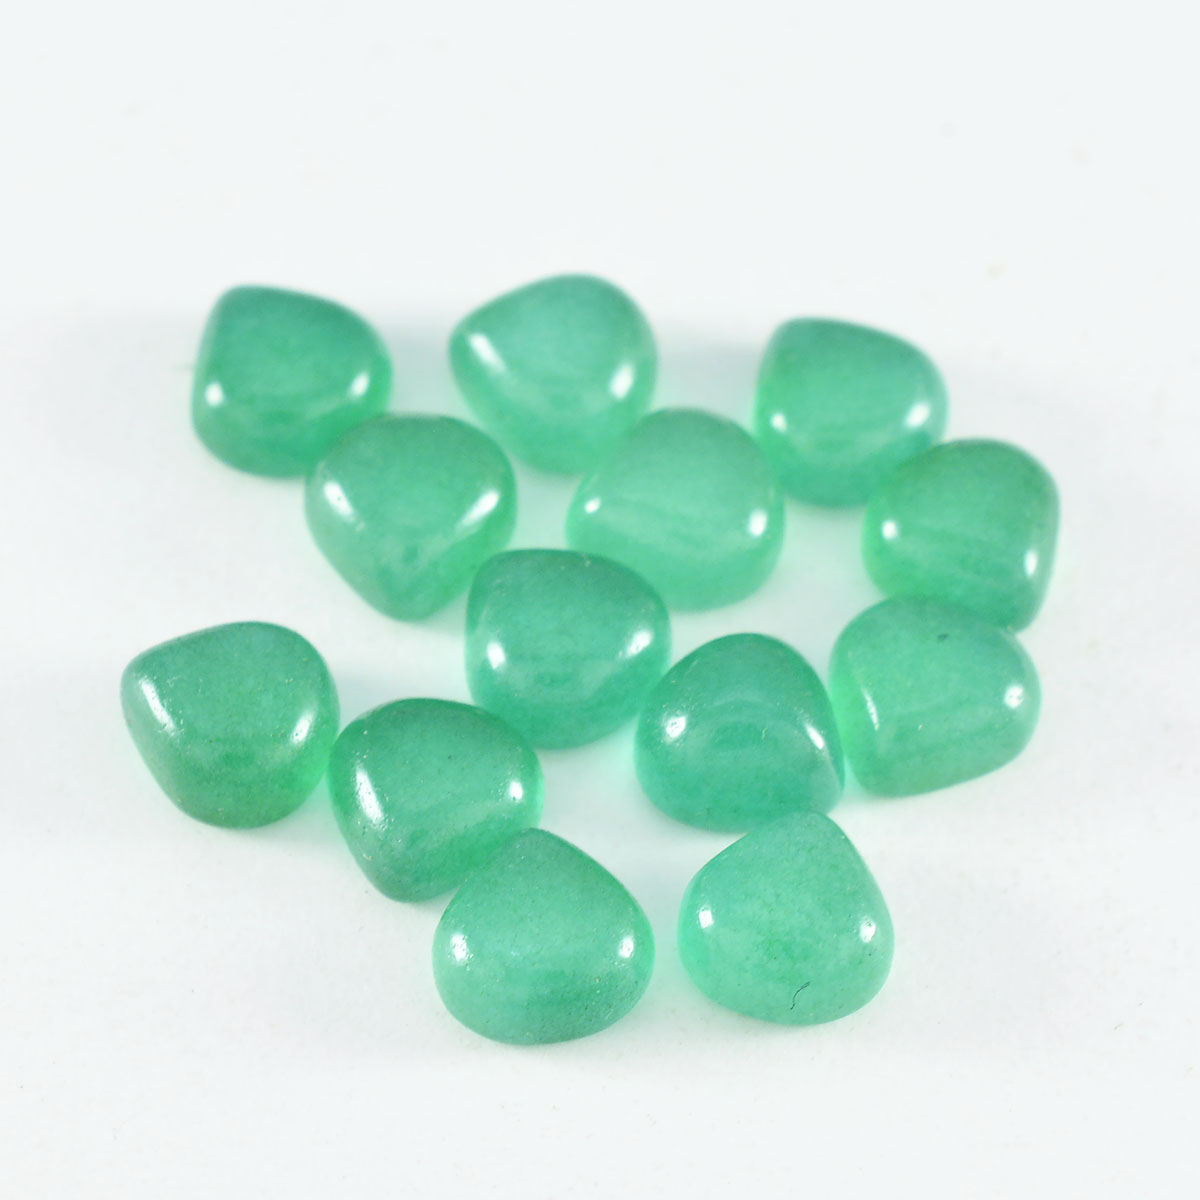 Riyogems 1 Stück grüner Onyx-Cabochon, 7 x 7 mm, Herzform, hübscher, hochwertiger, loser Edelstein